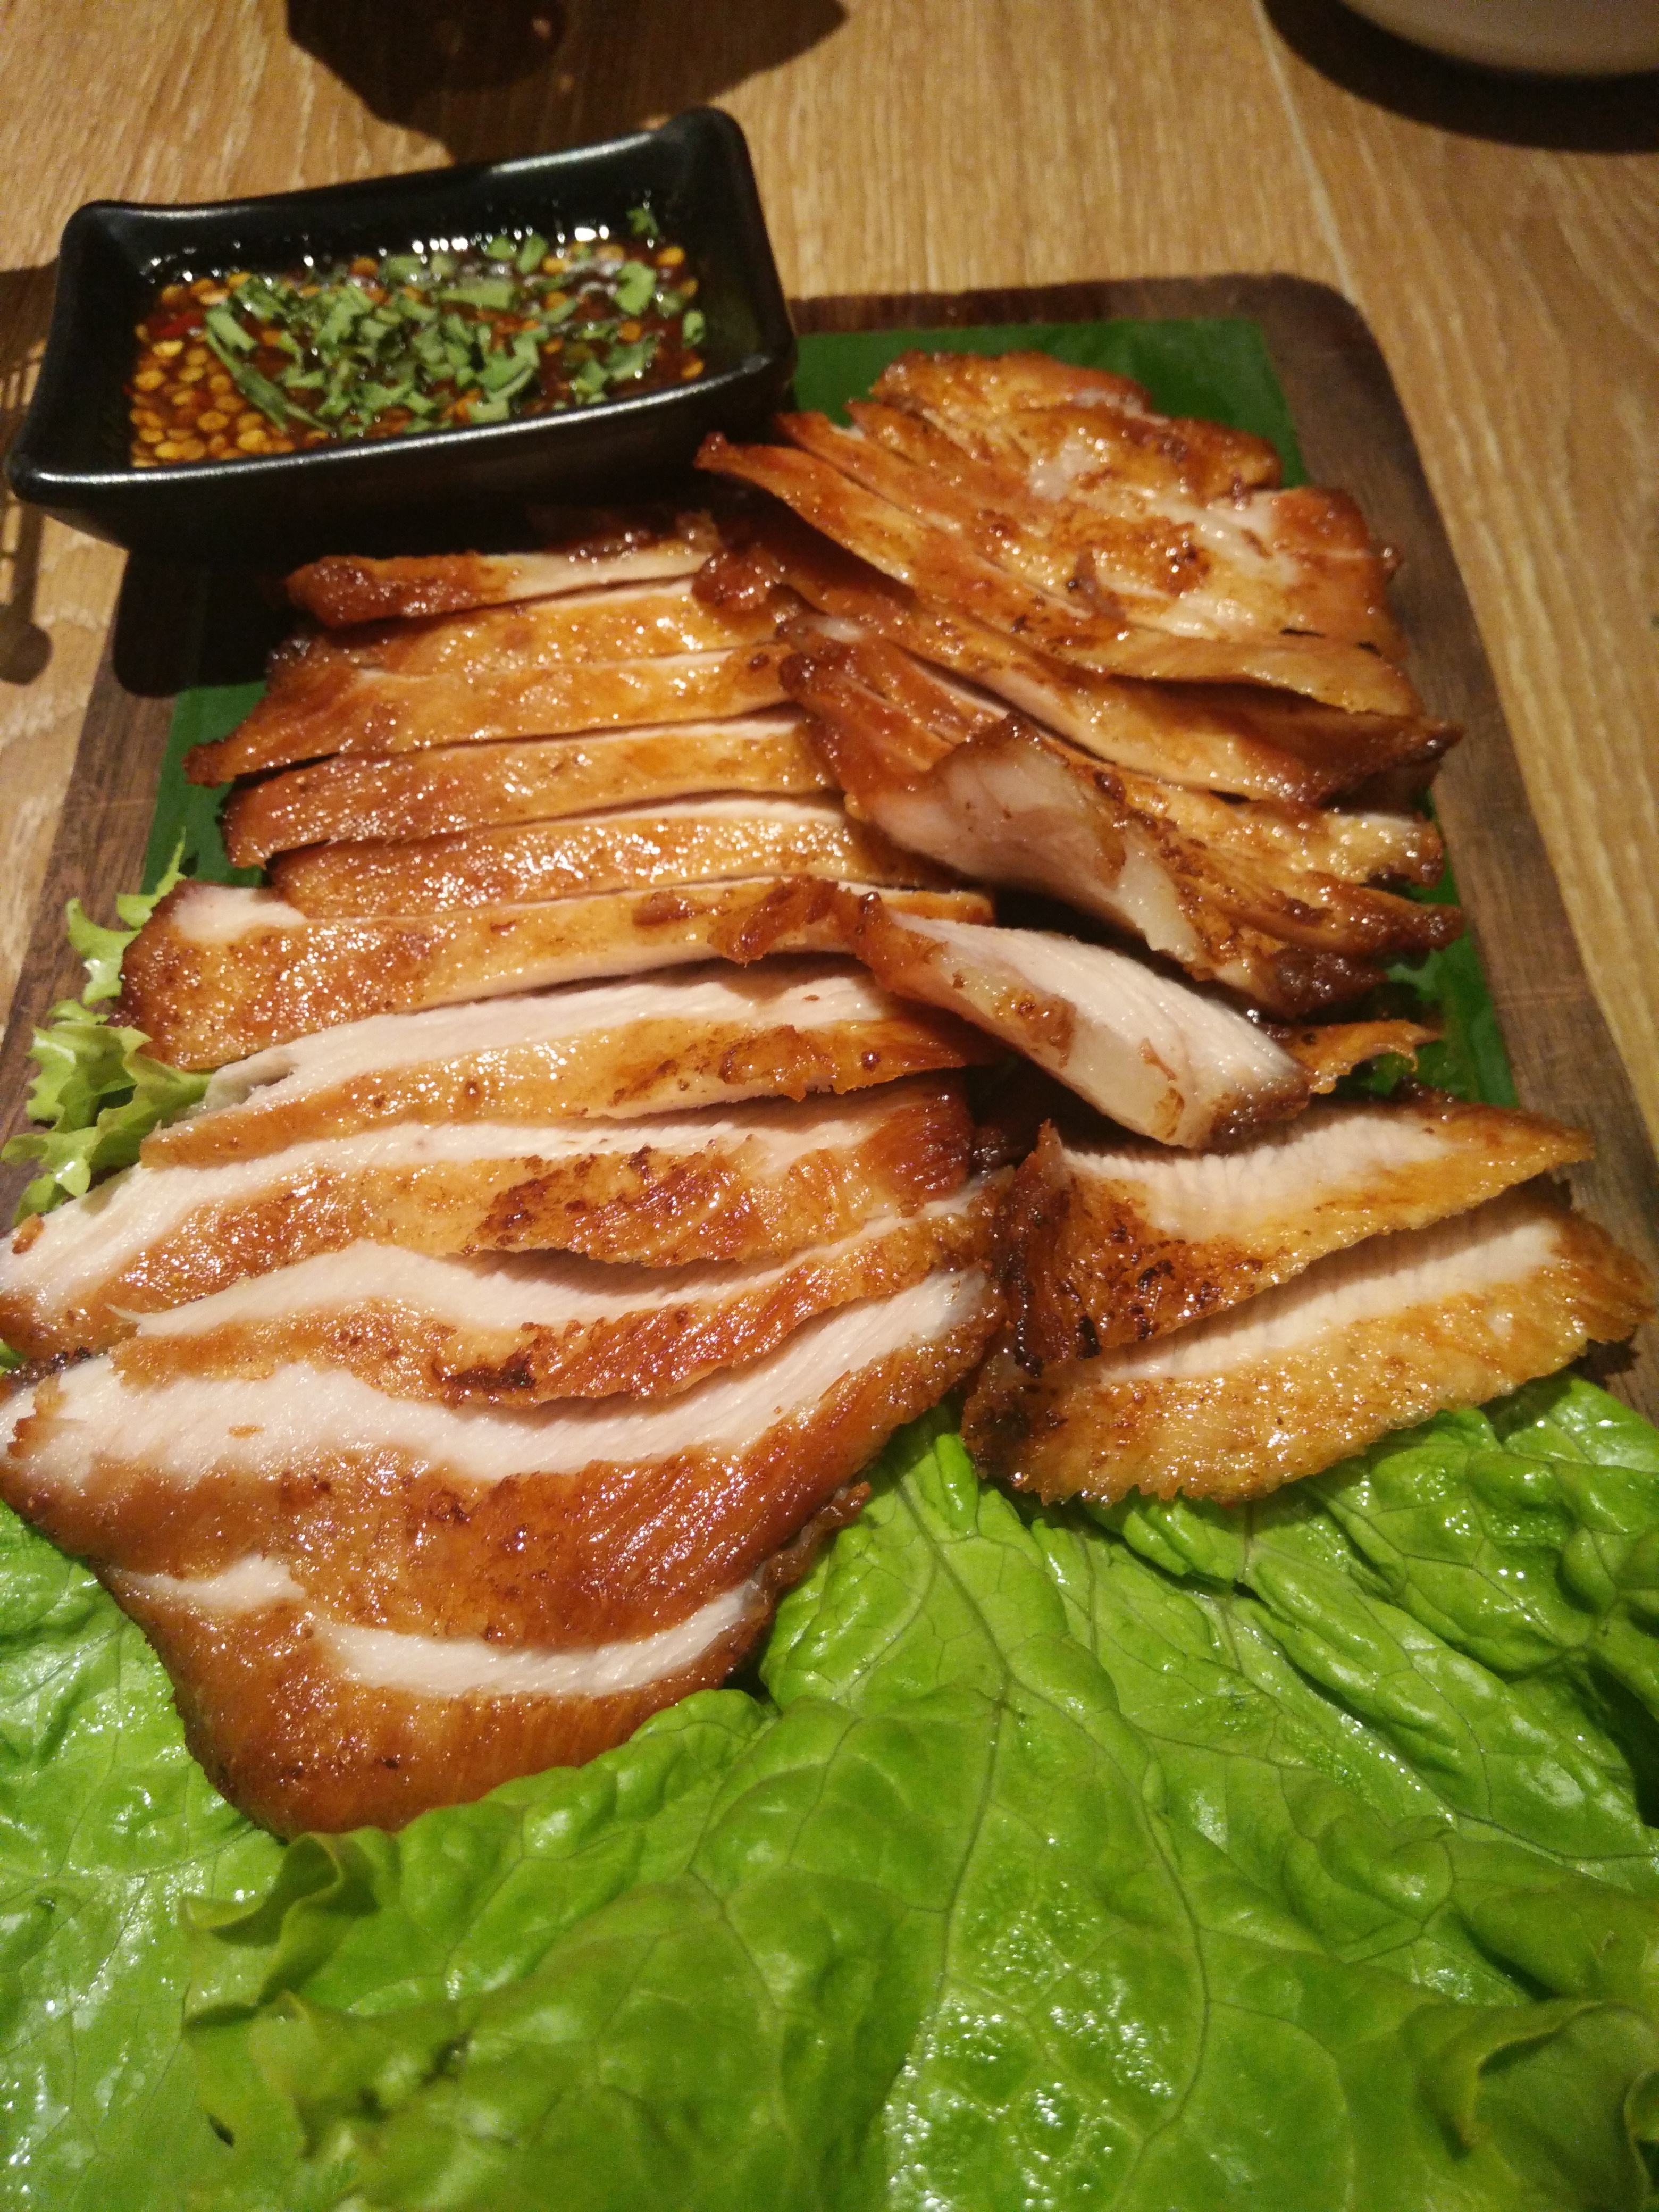 碳烤猪颈肉其次,这里的菜品,保持了泰国菜传统的特点,有些菜品为了